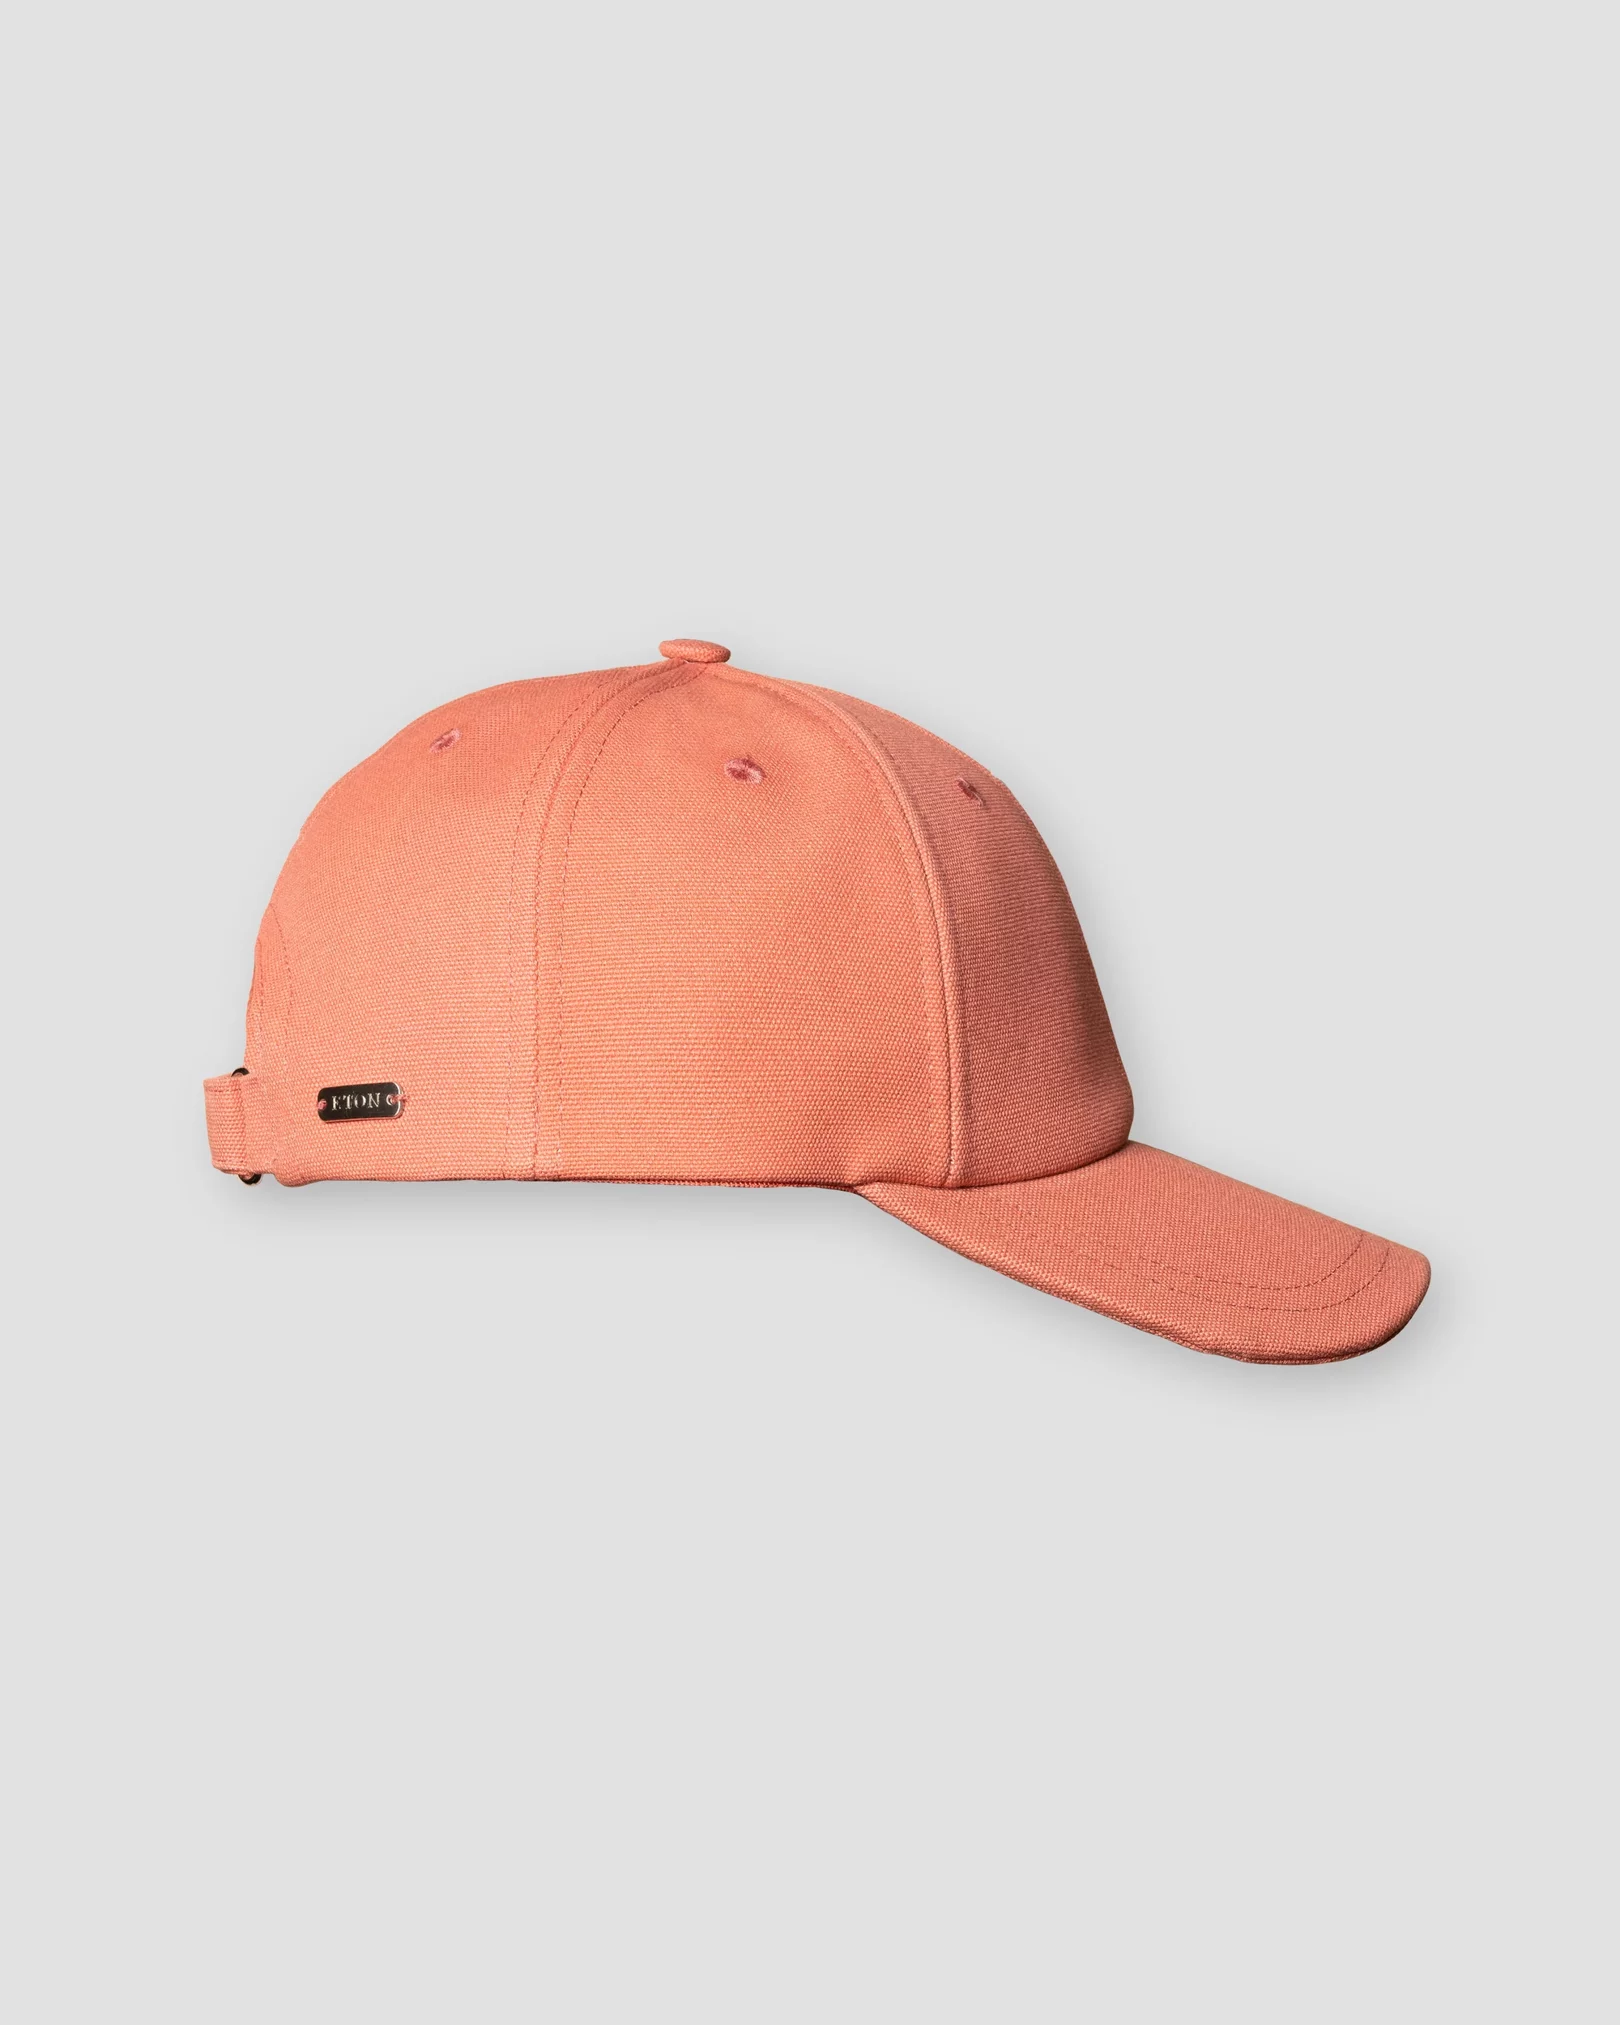 Orange Cotton Cap